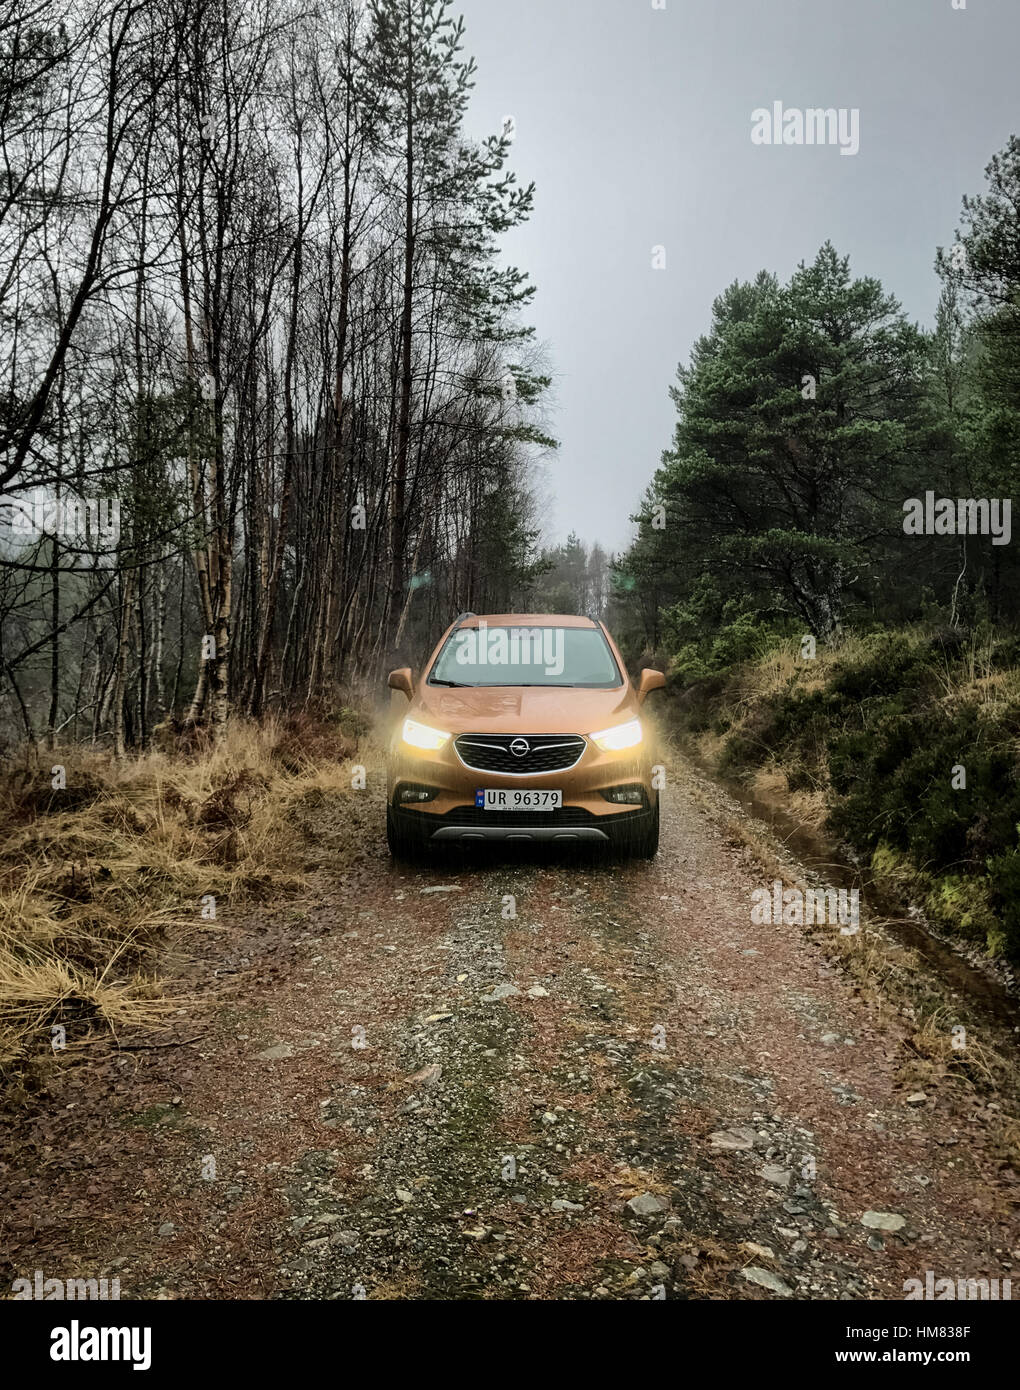 SUV Opel sur une étroite route forestière Banque D'Images